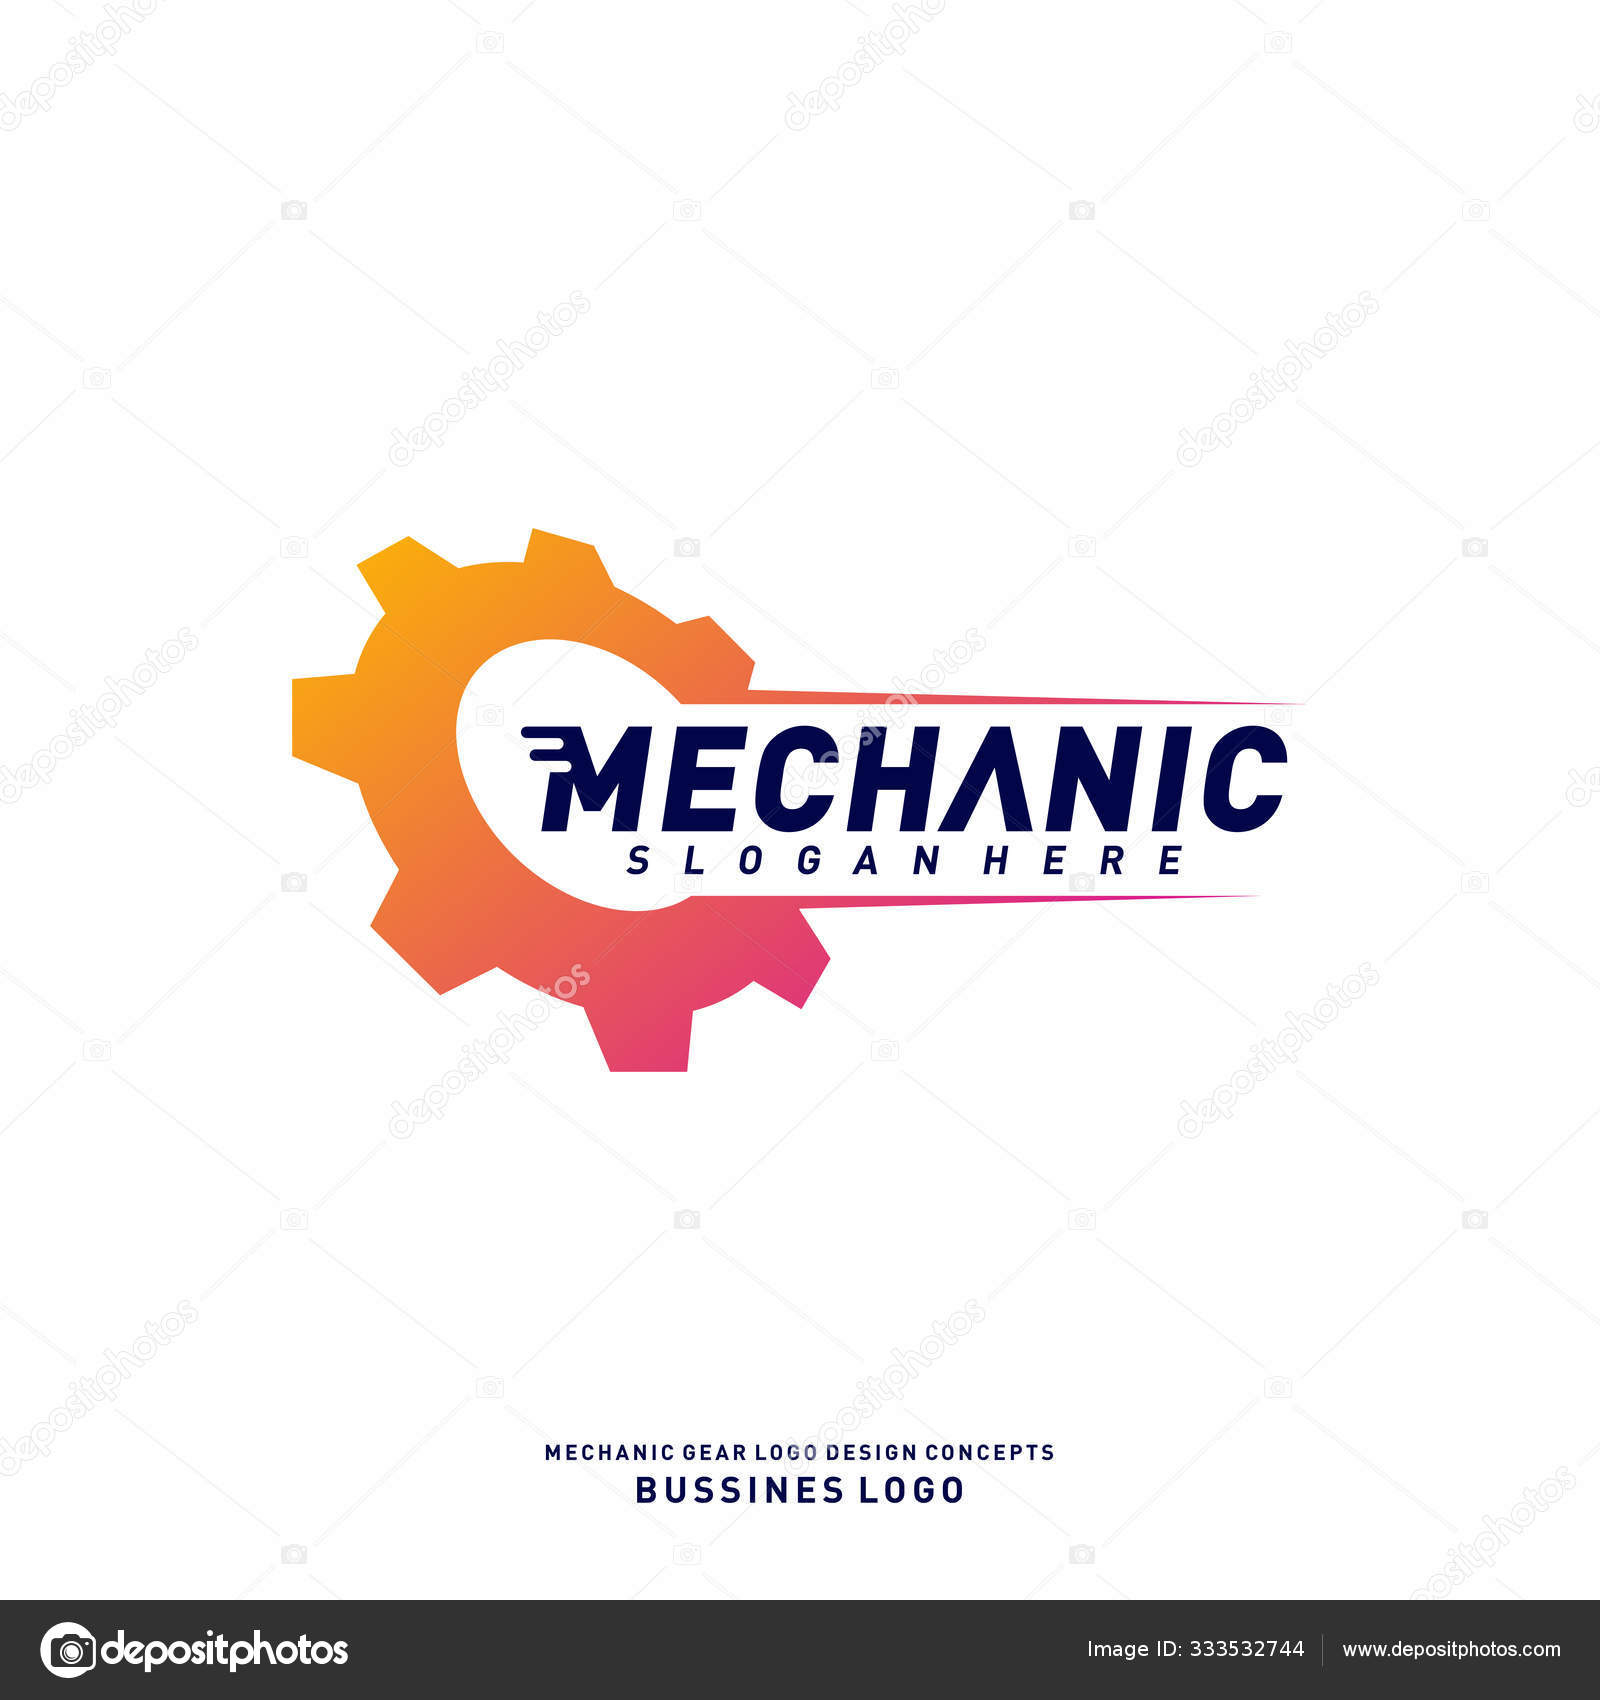 Mechanical Gear Logos